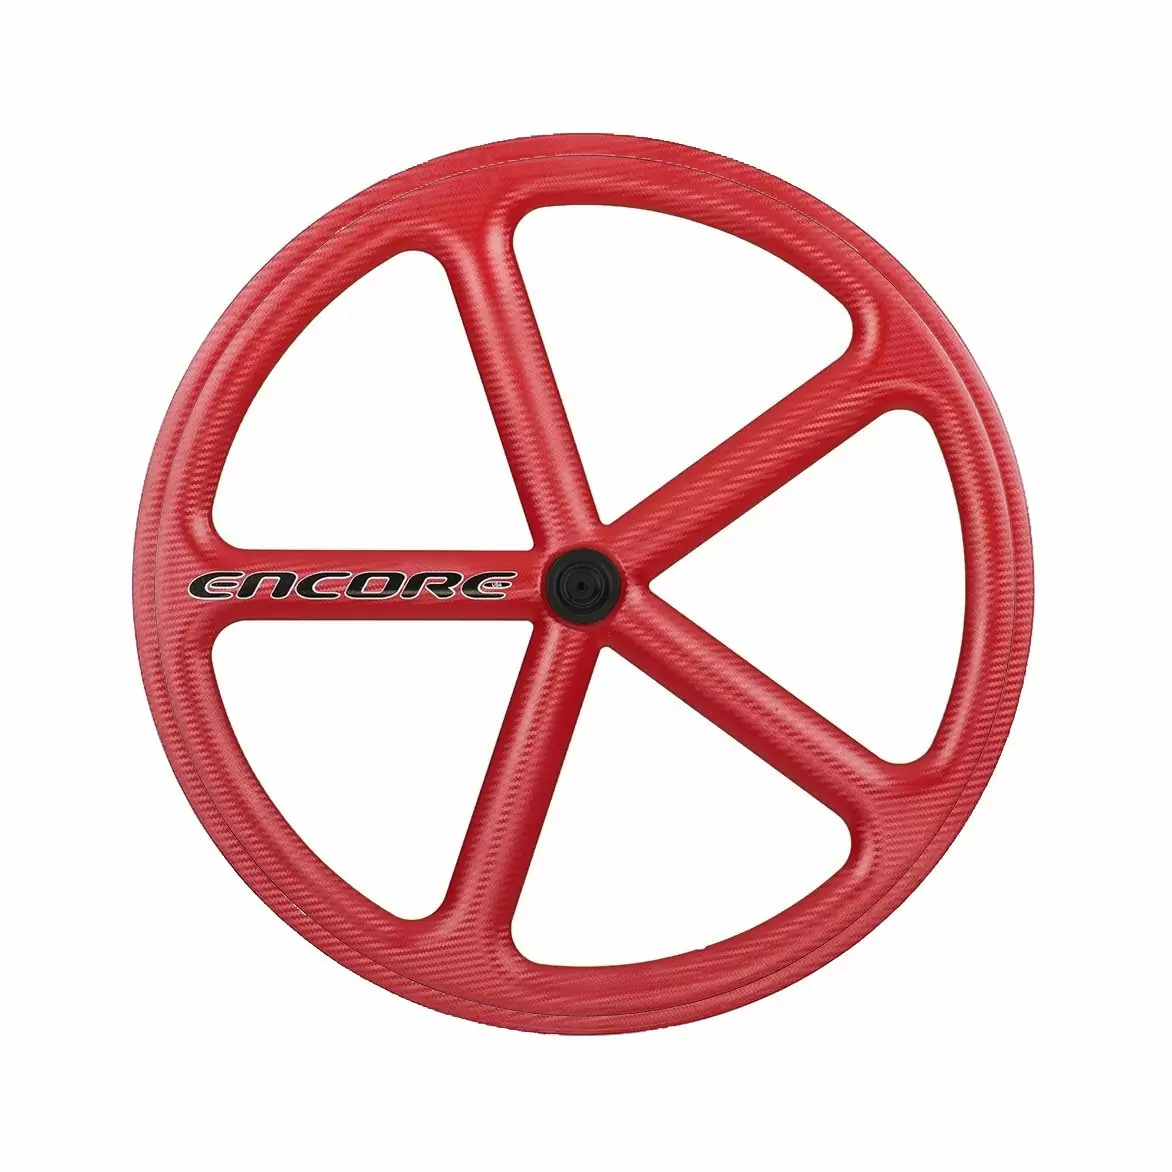 roda traseira 700c track 5 raios fibra de carbono vermelha nmsw - image